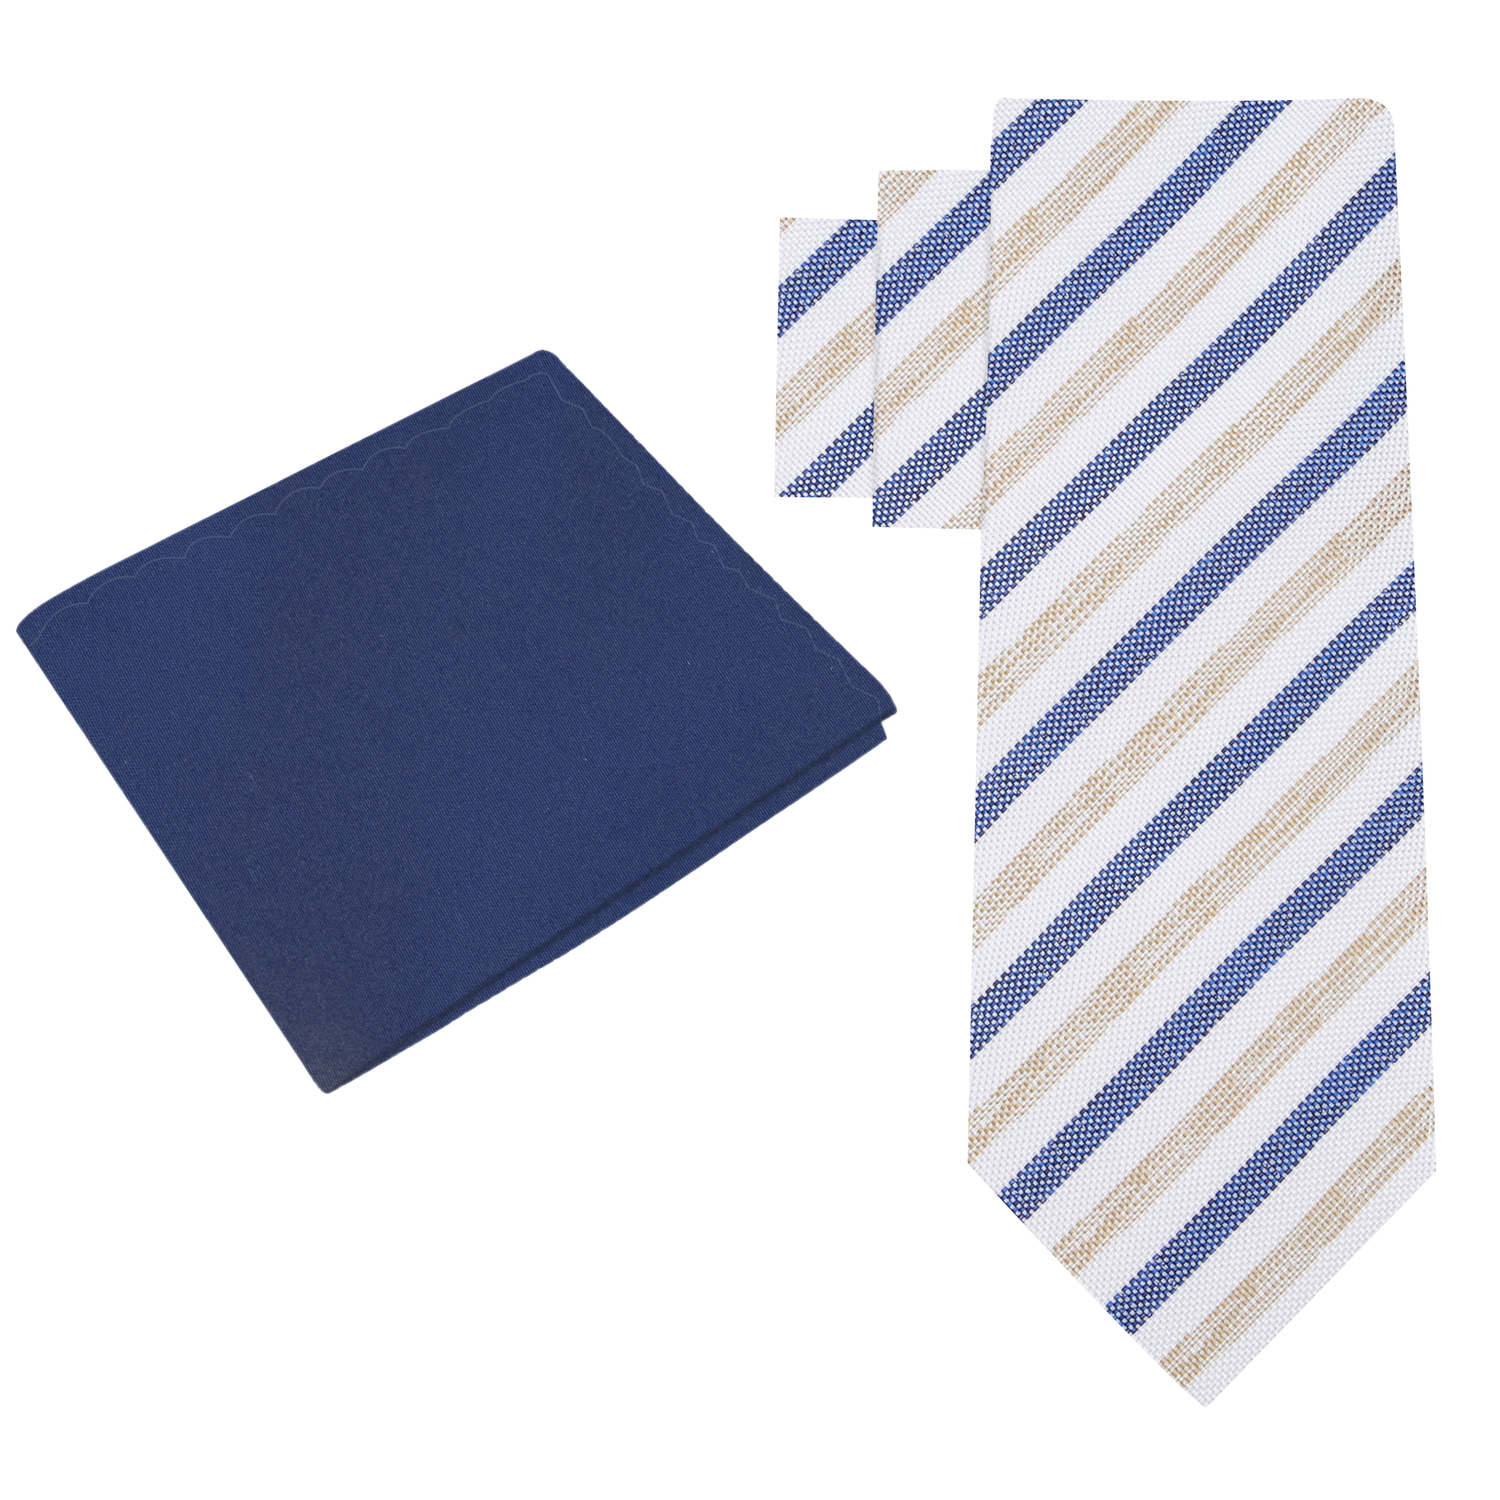 Alt View: White, Dark Blue, Light Brown Stripe Necktie with Dark Blue Square